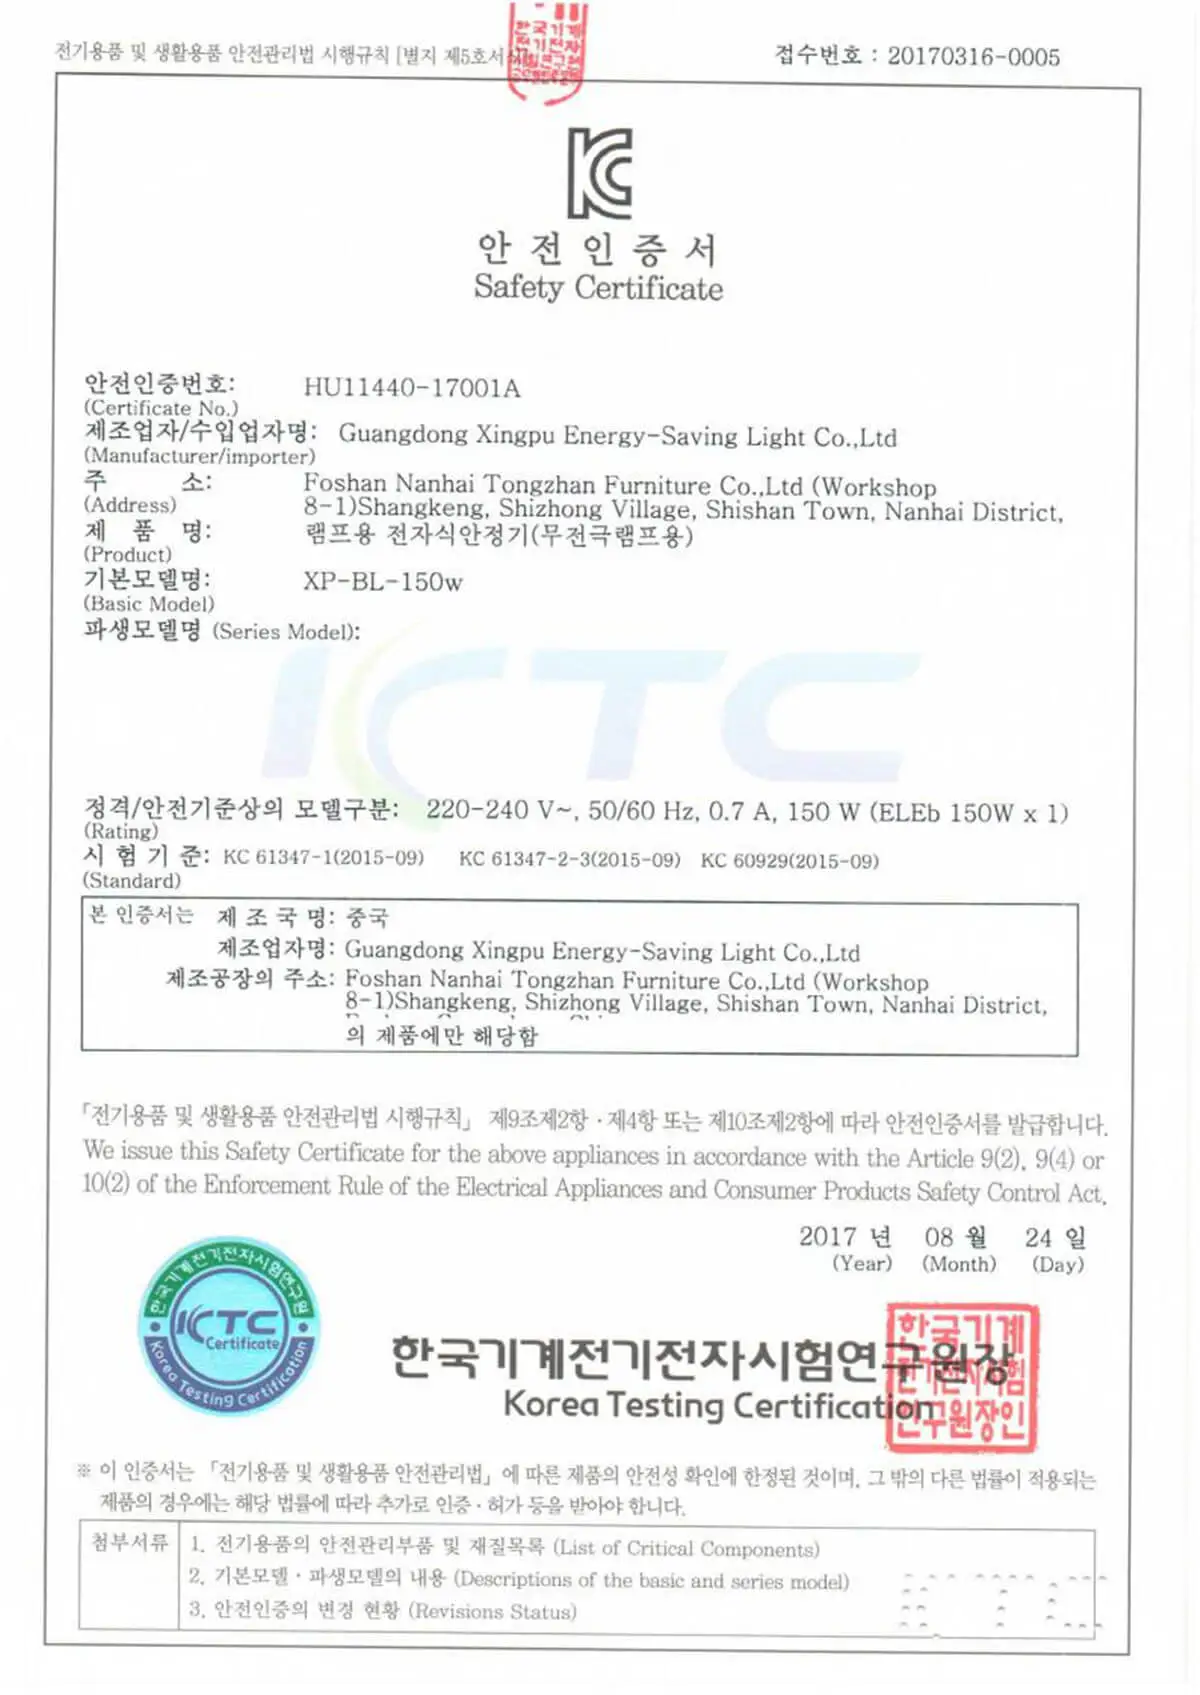 Certificación KC de Corea